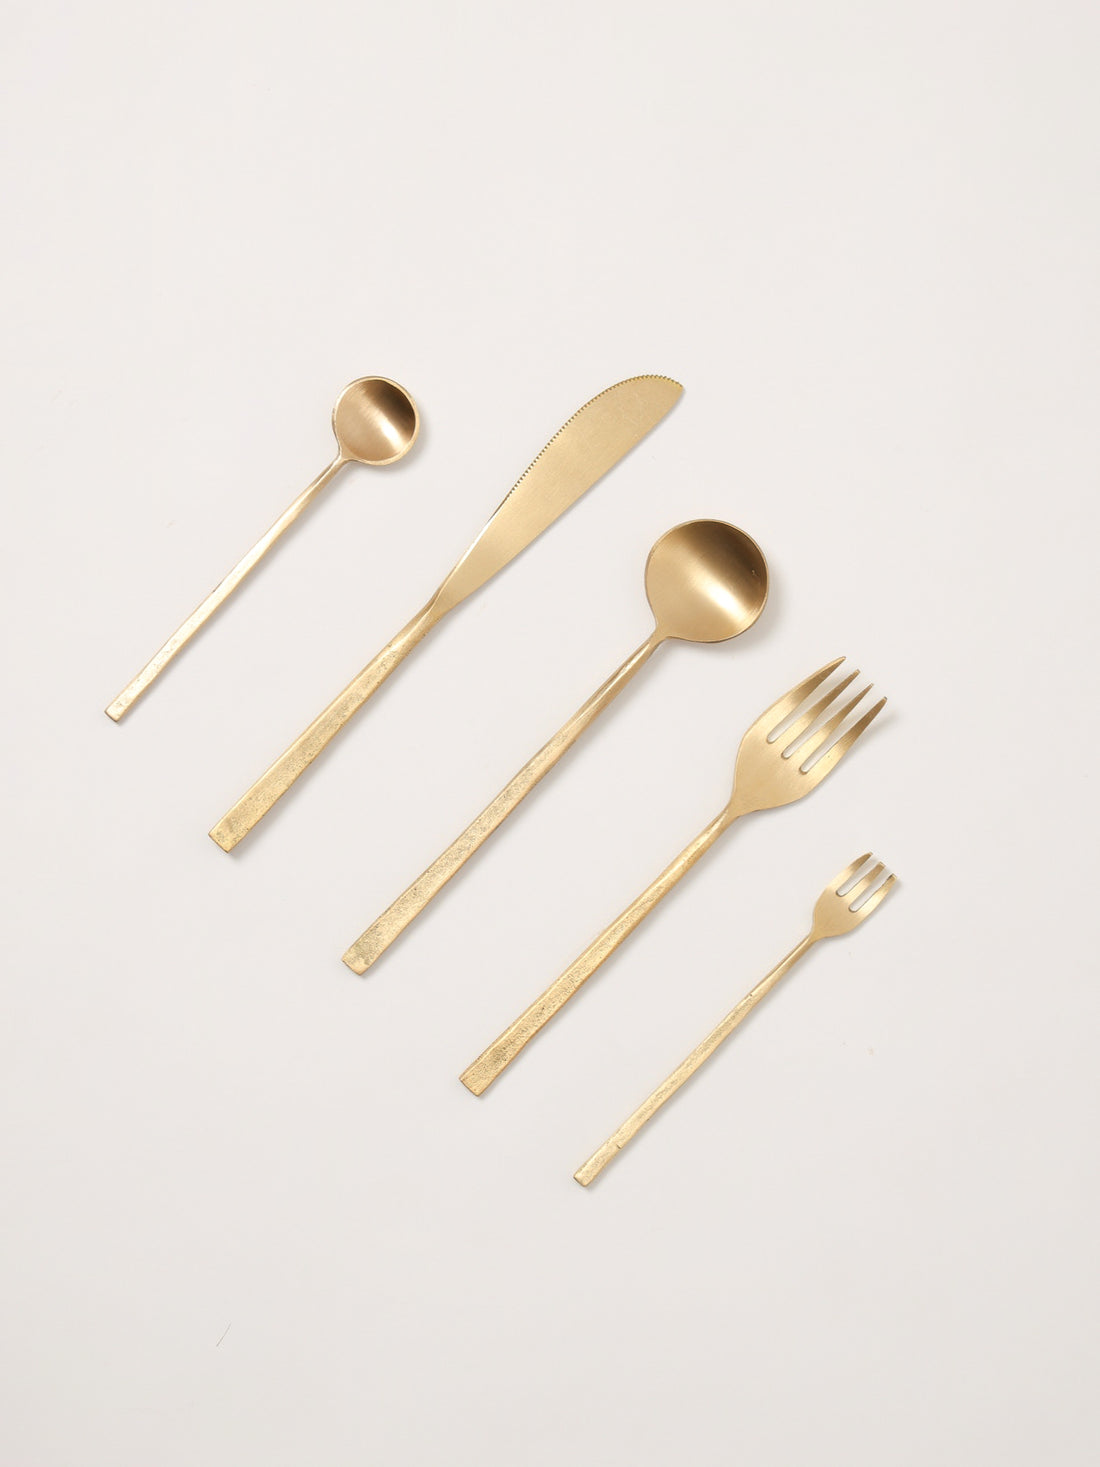 Wabi brass cutlery set of 5 by Fleck